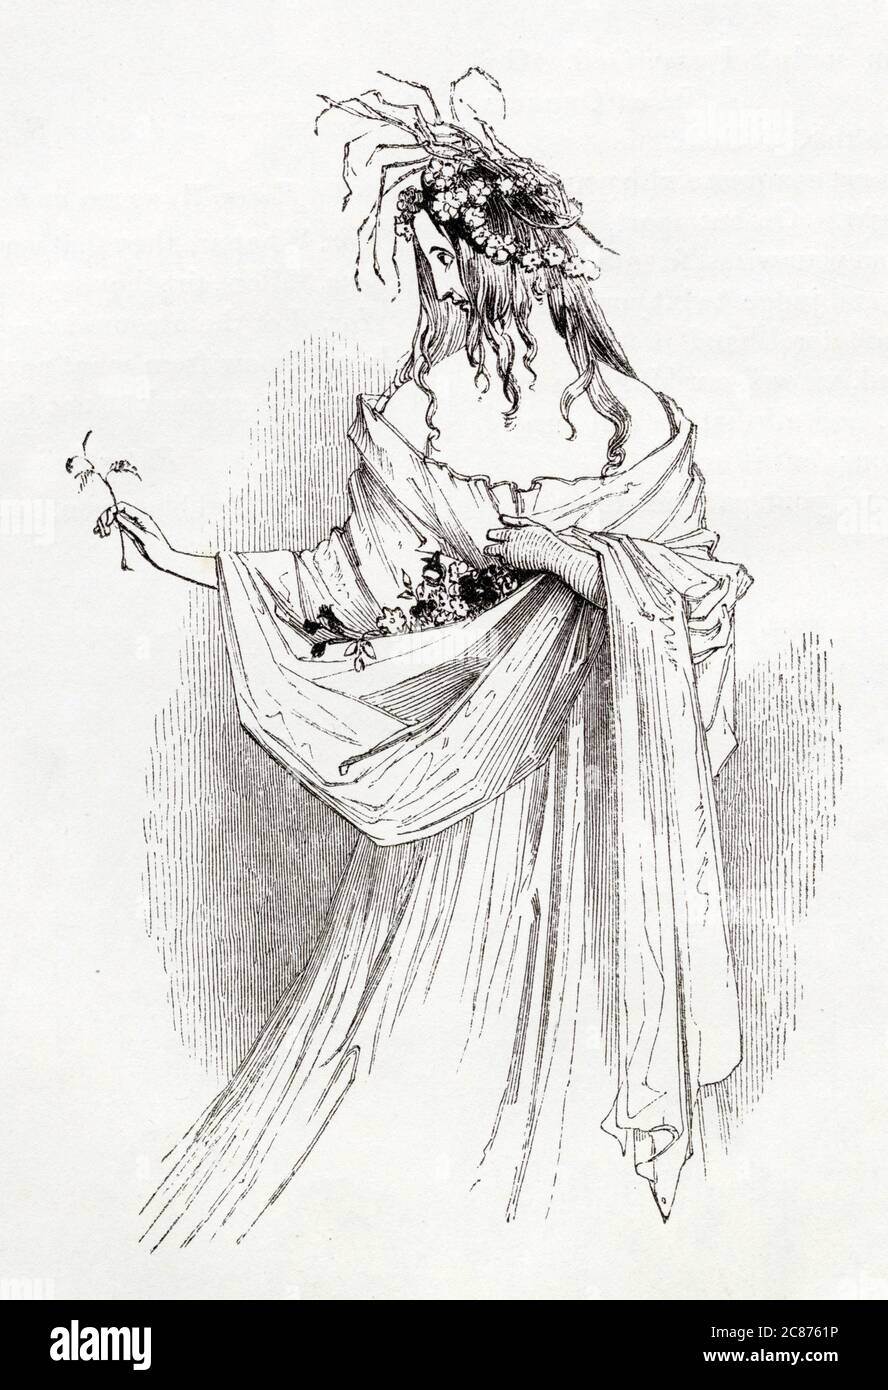 Illustration von Kenny Meadows an Hamlet, Prinz von Dänemark, von William Shakespeare. Ophelia mit Blumen und Strohhalmen, nach dem Tod ihres Vaters Polonius vor Trauer wütend geworden. Datum: 1840 Stockfoto